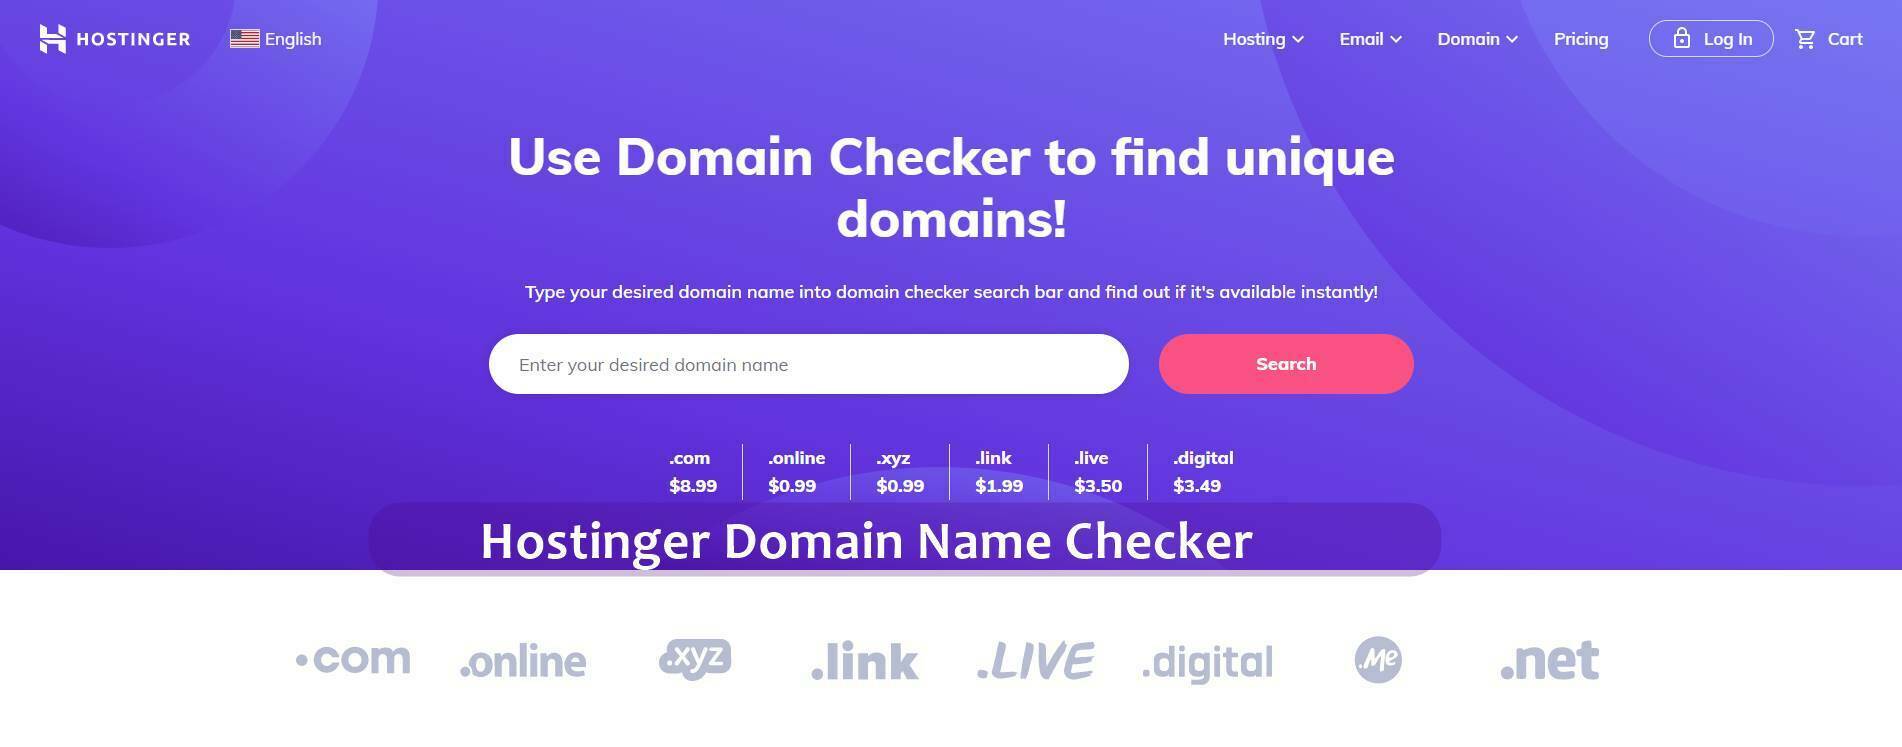 Hostinger Domain Name Checker